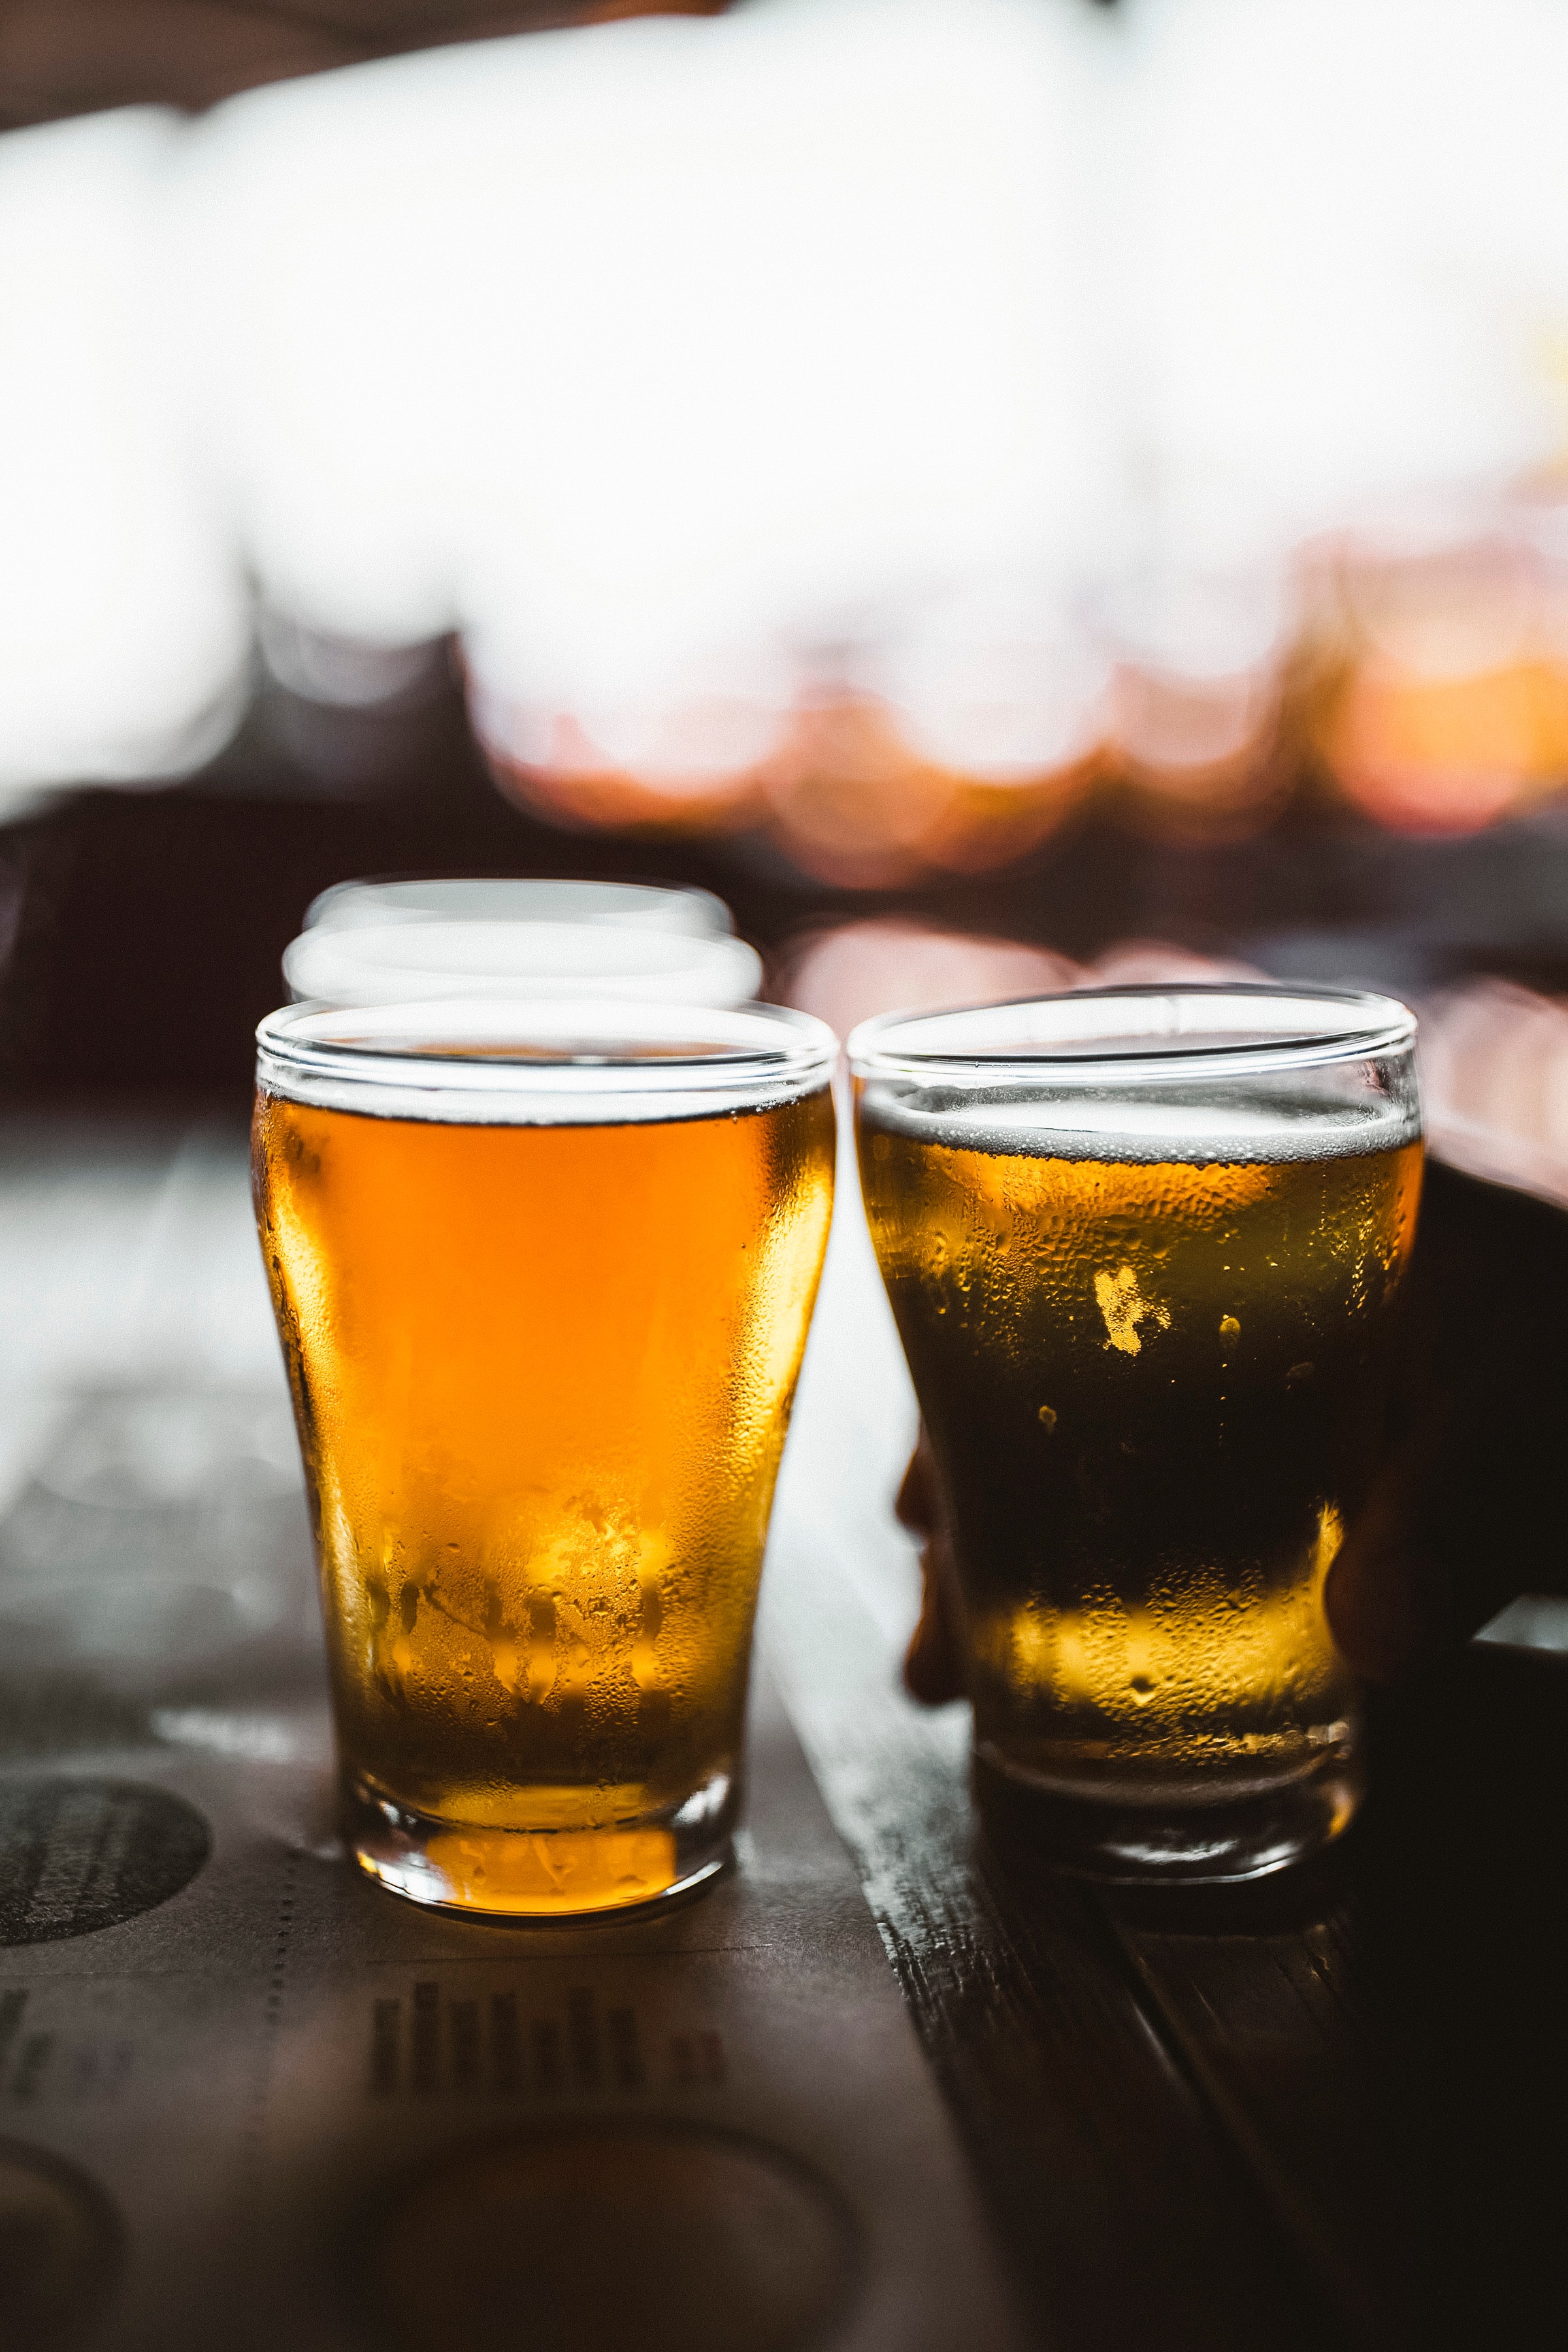 Bière sans alcool : comment est-elle fabriquée ? - Beertime